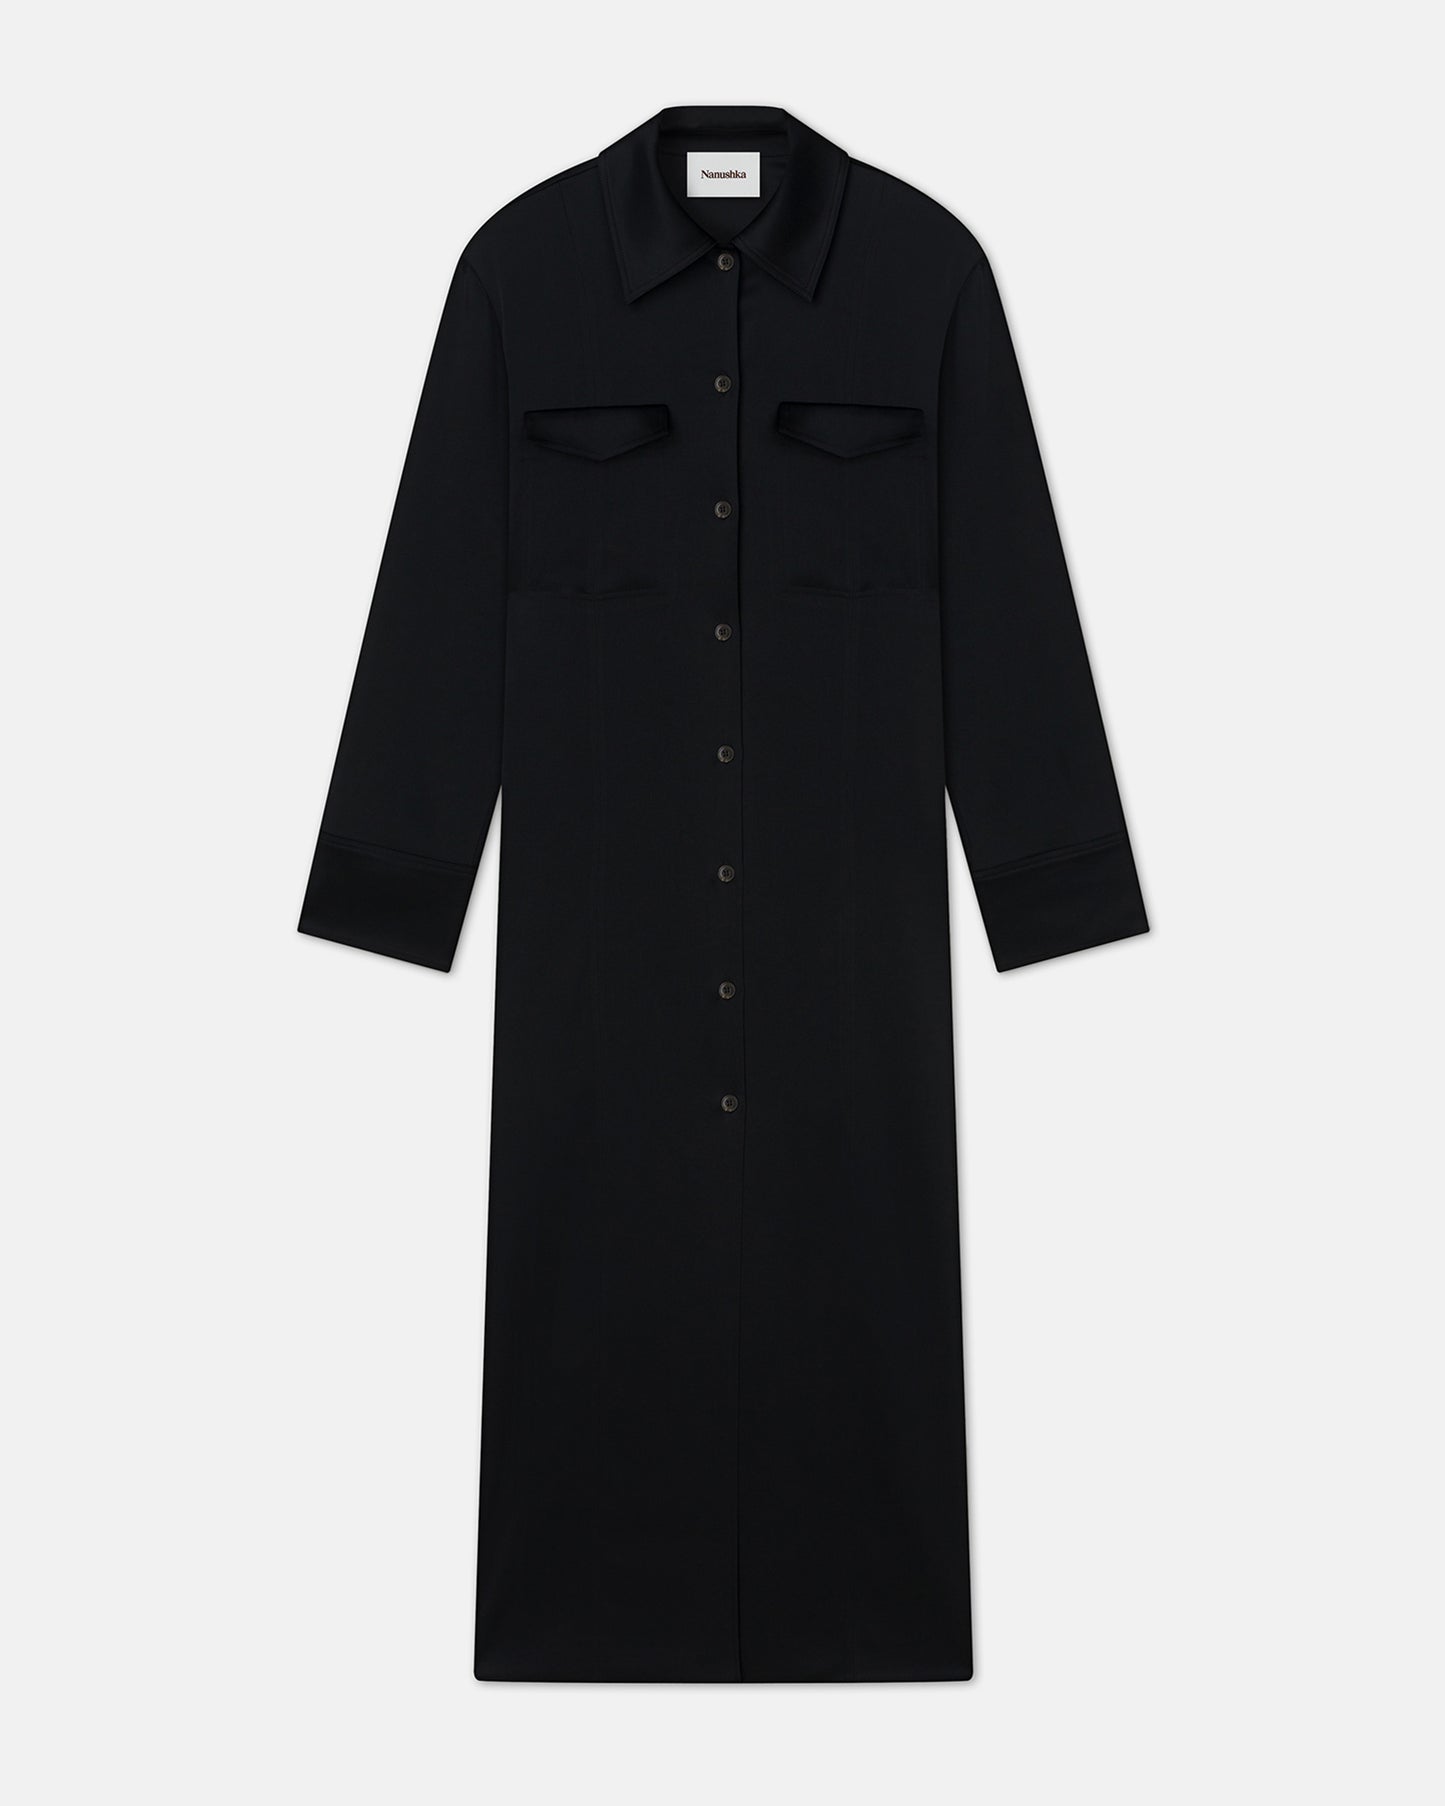 Joann - Slip Satin Shirt Dress - Black